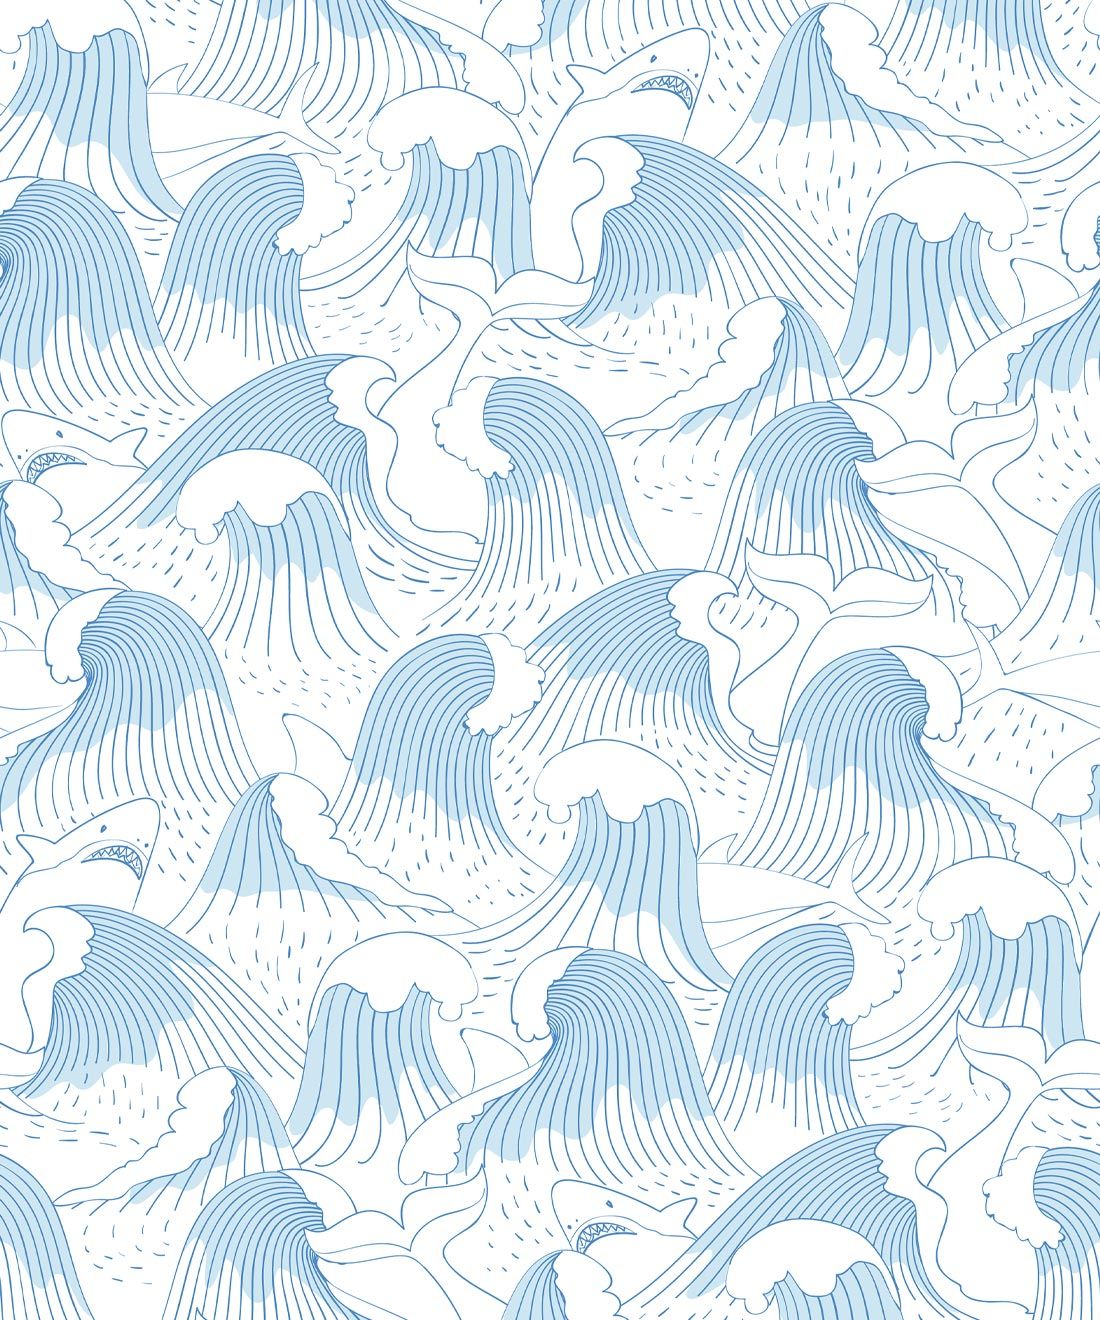 Ripple Wallpaper • Waves & Sharks Wallpaper